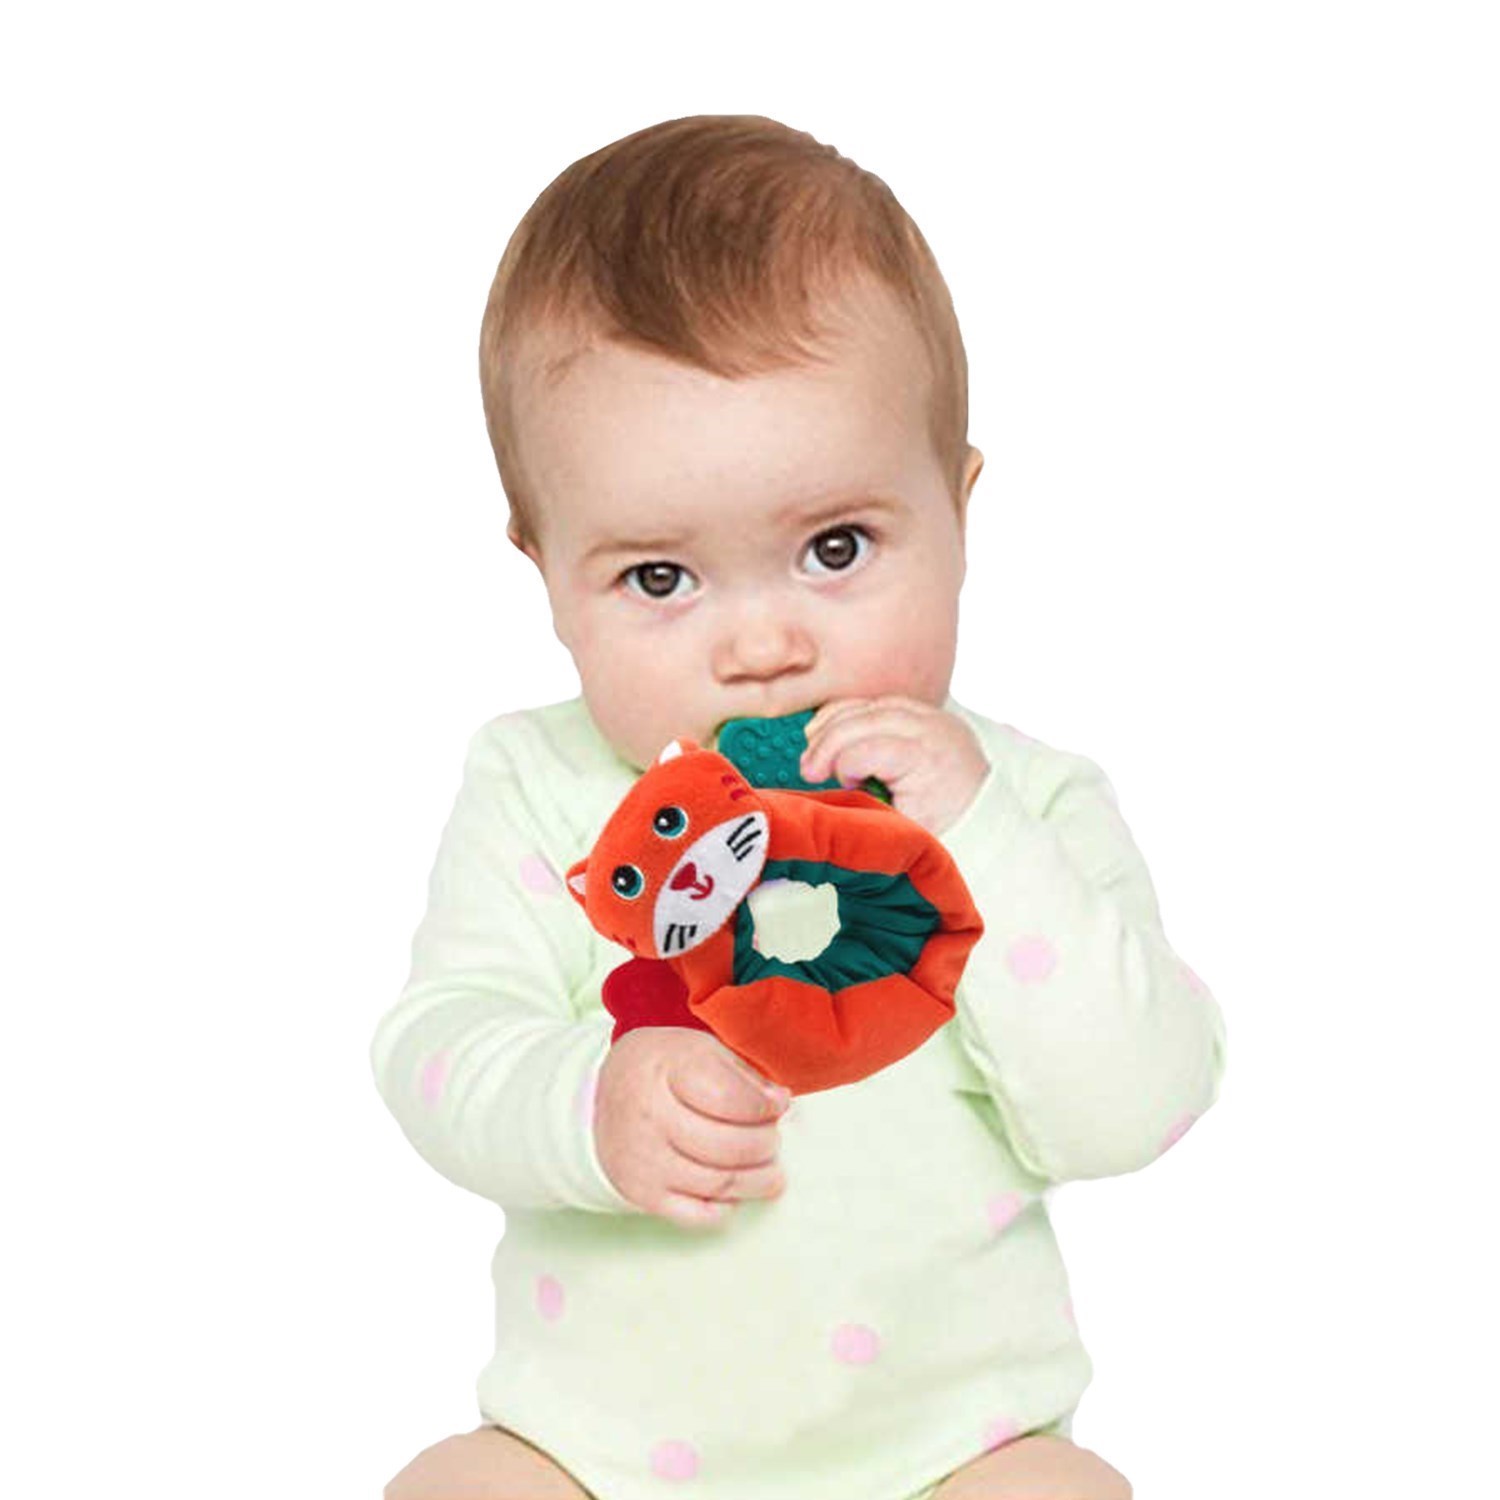 Babycim Bileklik Sevimli Diş Kaşıyıcı Oyuncak 7025 Turuncu